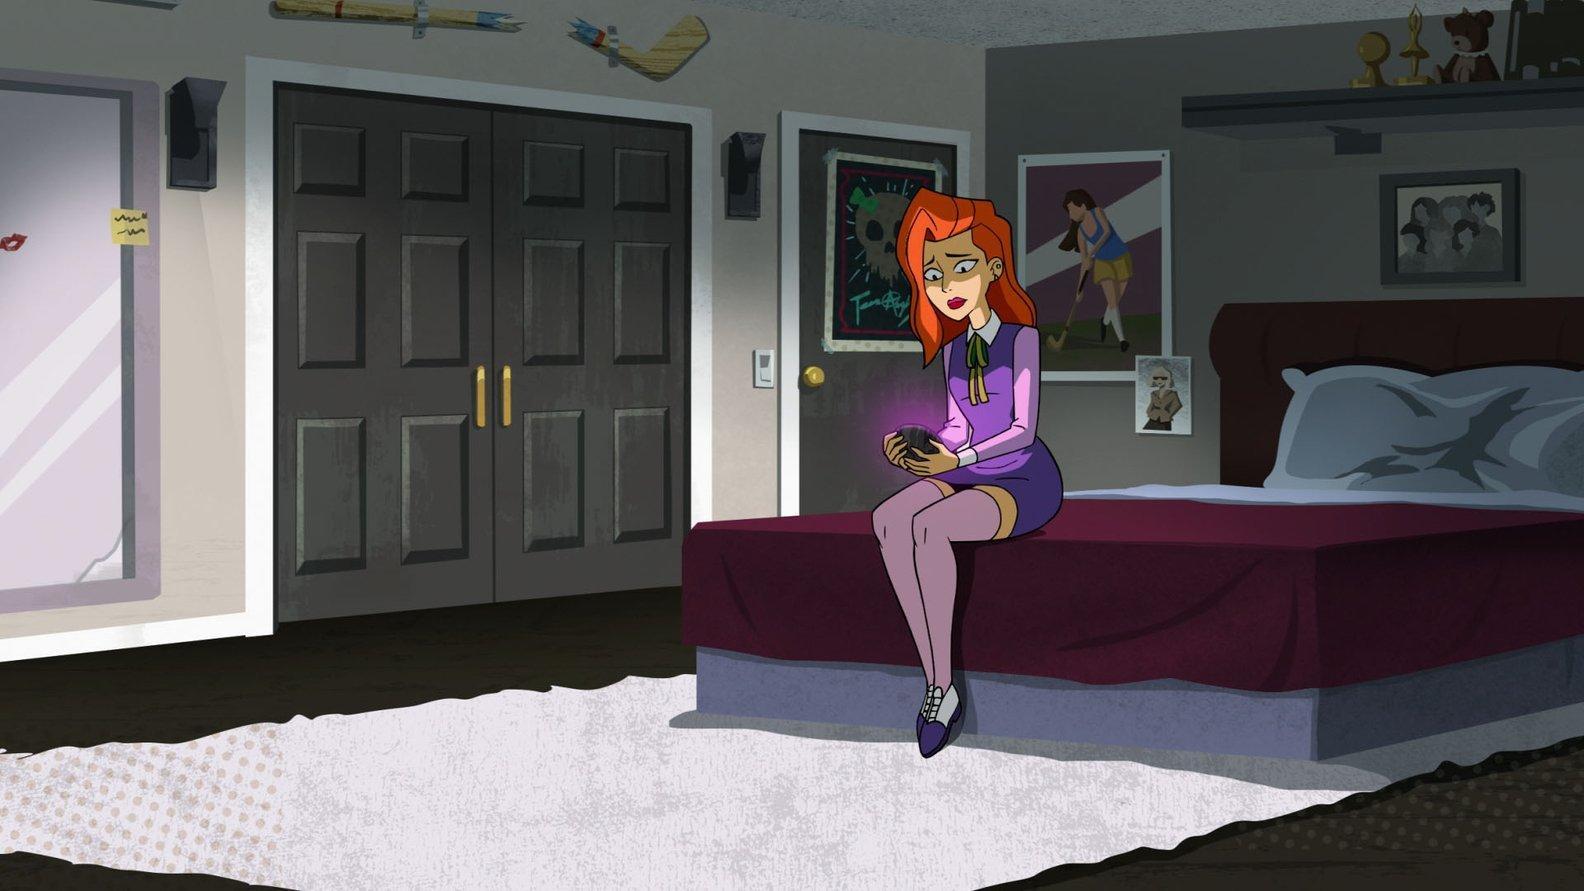 Velma (2023) - Filmaffinity